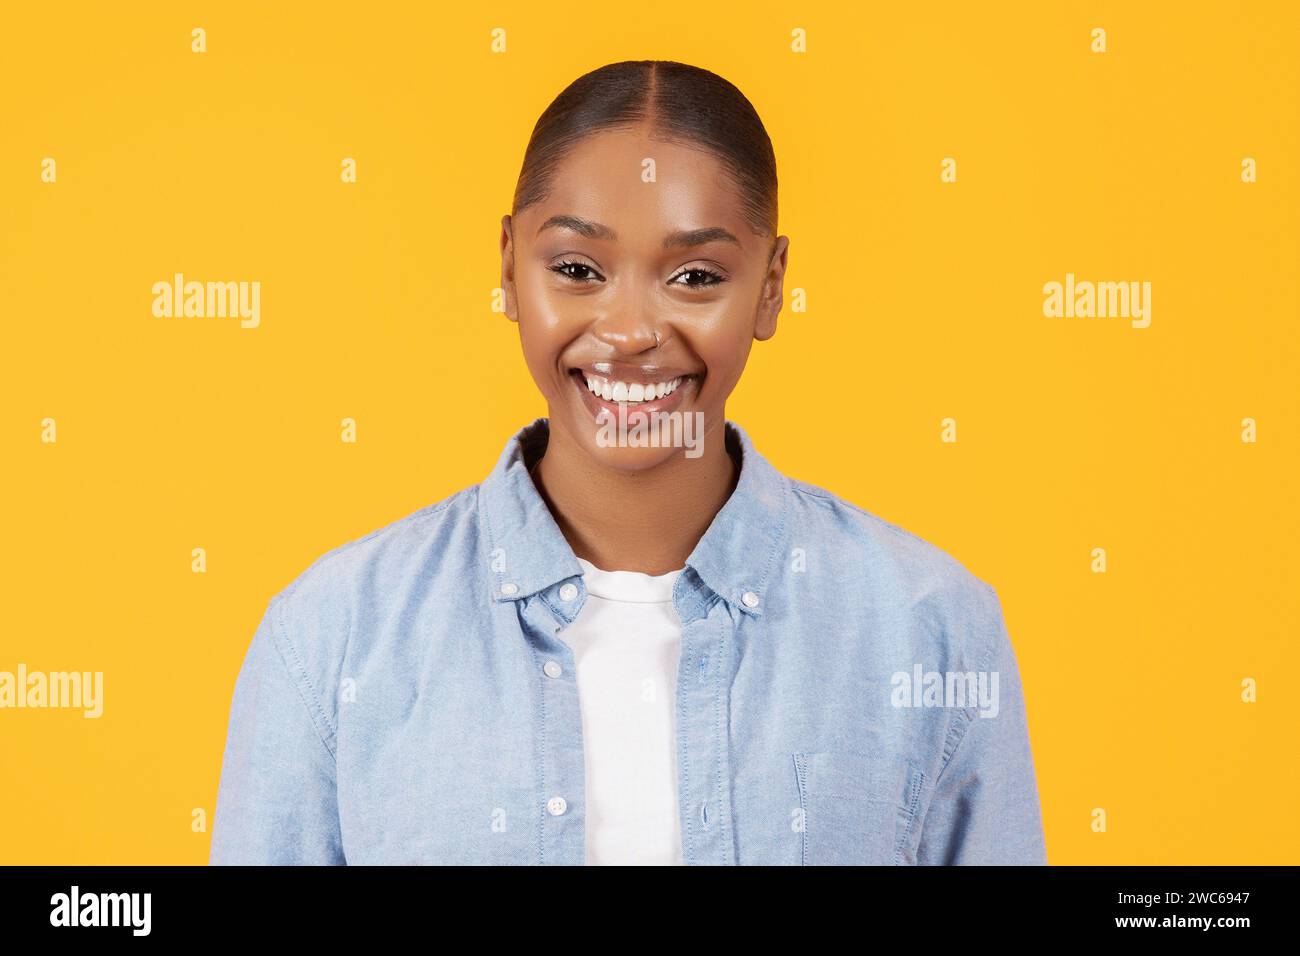 ritratto di happy black woman in abbigliamento denim, sfondo giallo Foto Stock